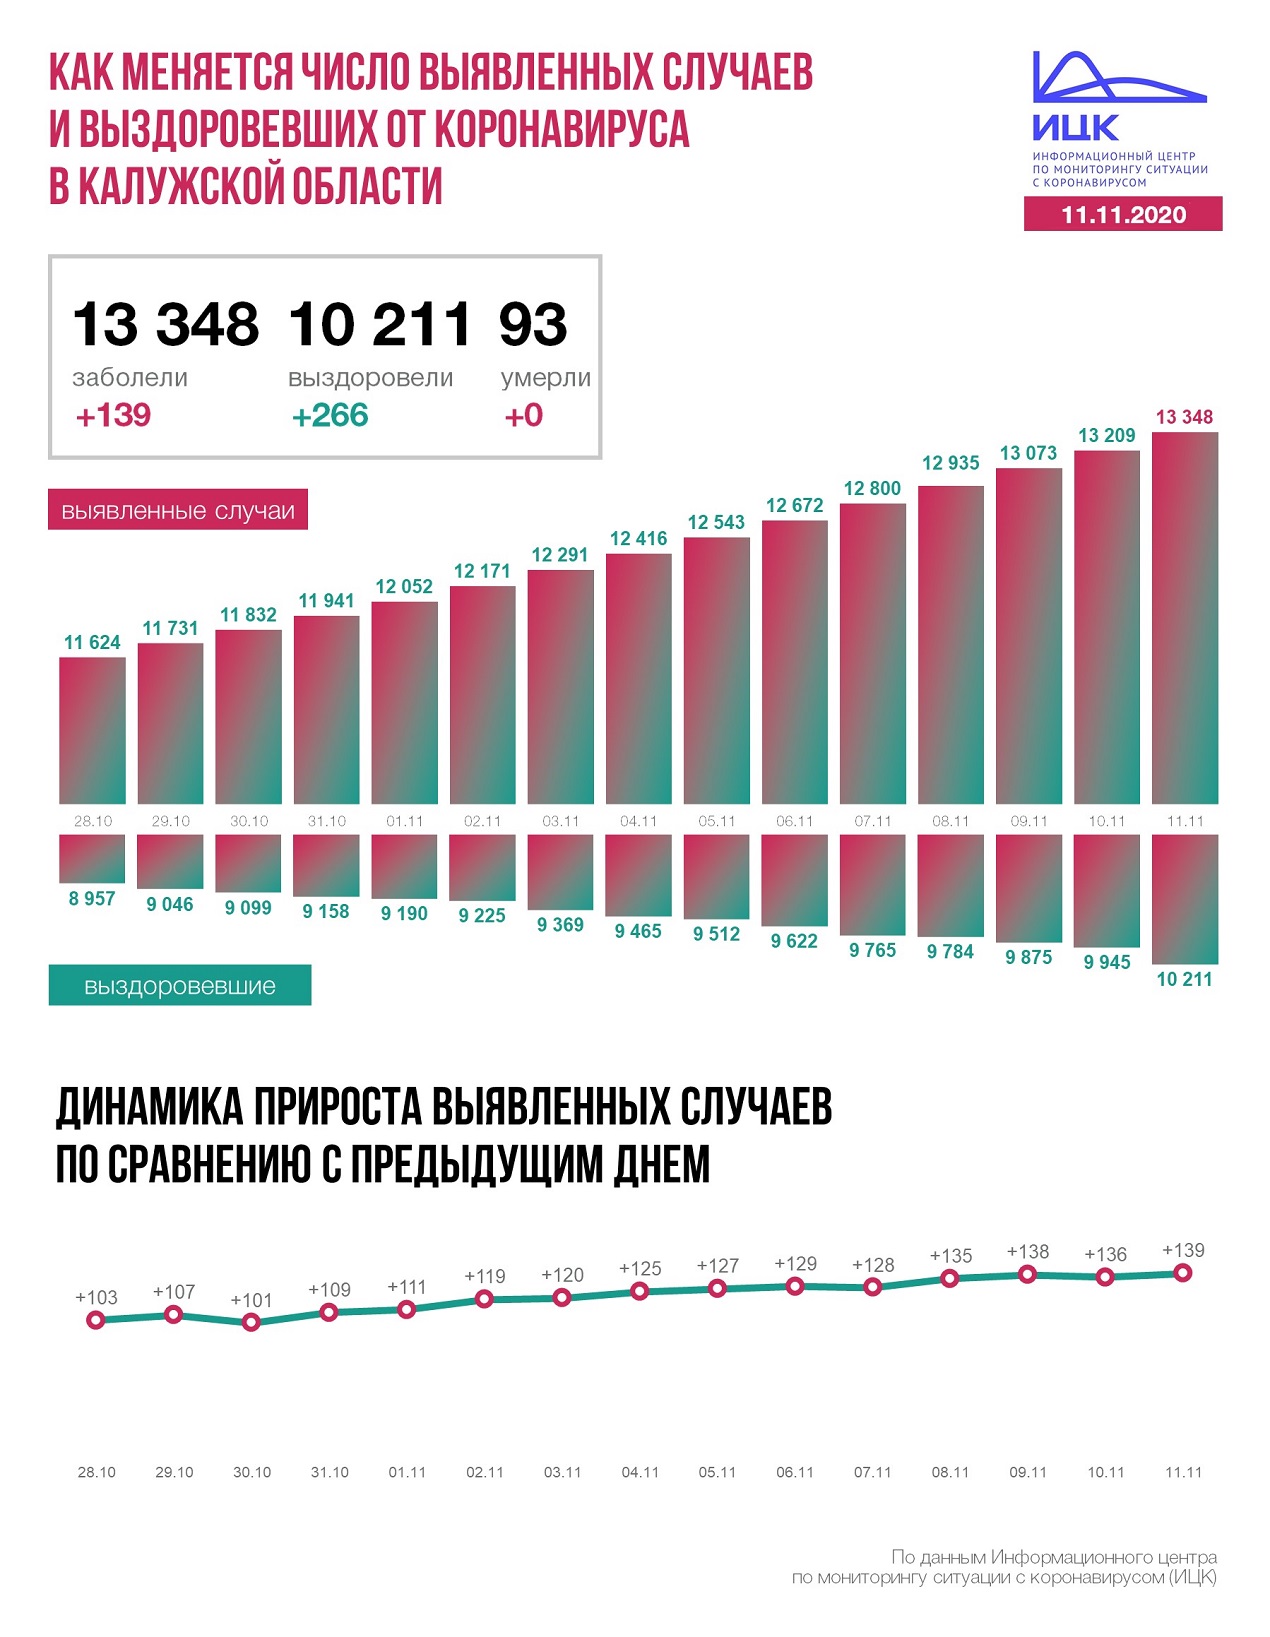 Официальные данные по коронавирусу в Калужской области на 11 ноября 2020 года.